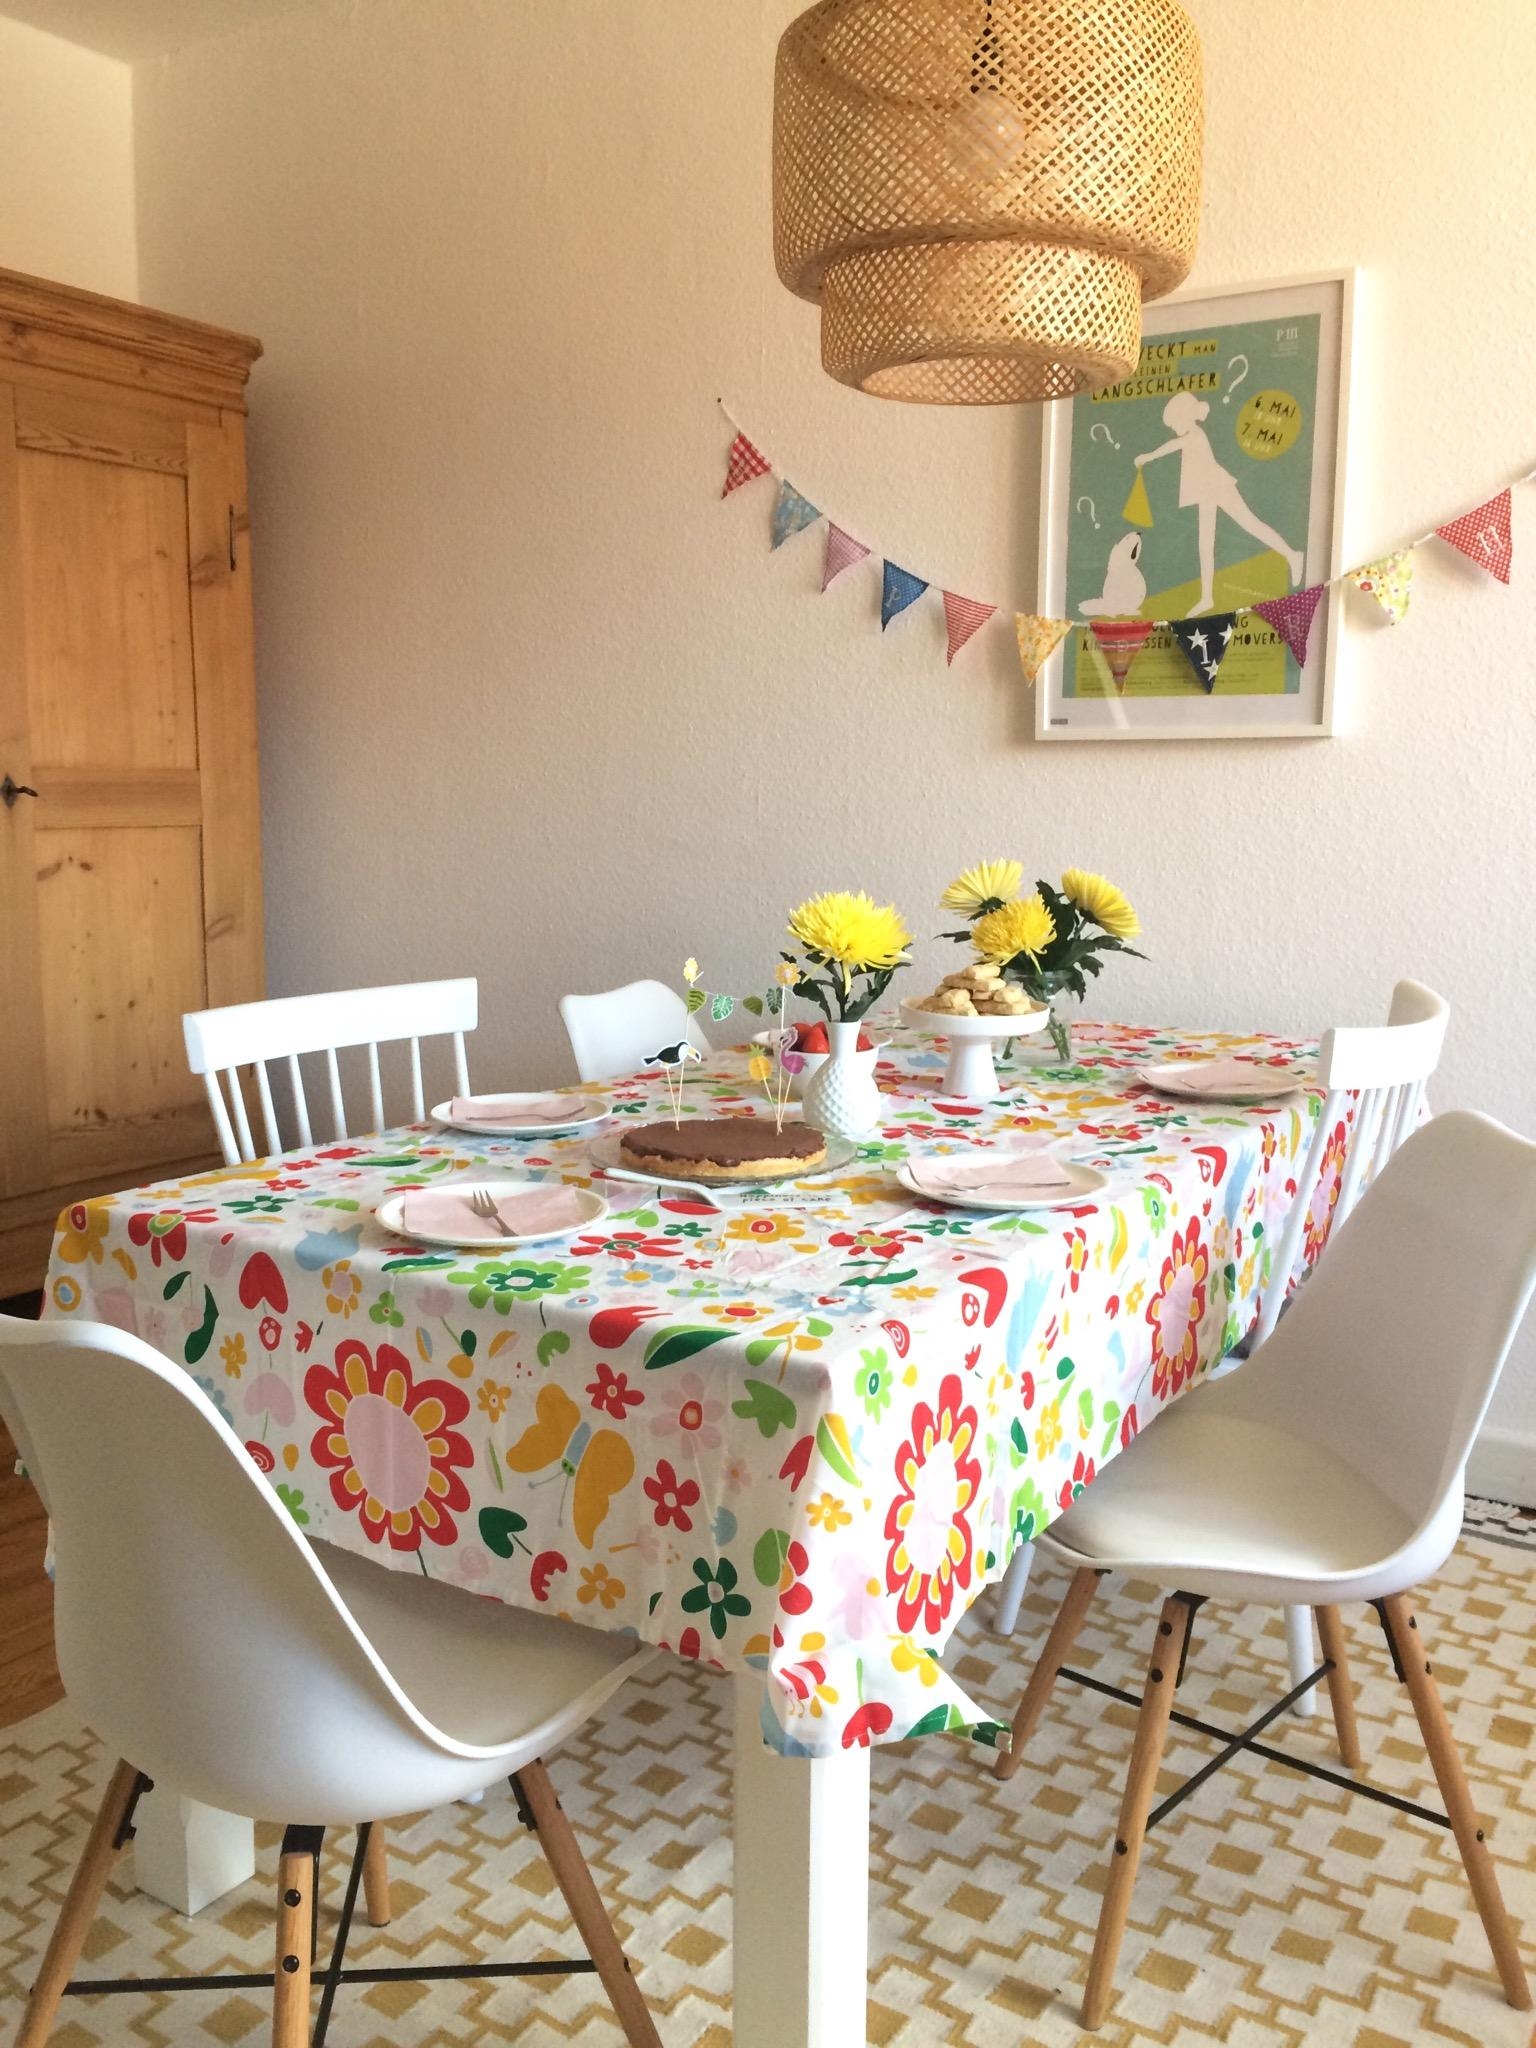 Happy birthday party. #esszimmer #living #interior #Geburtstagstisch #hygge #skandinavisch #bunt #gutelaune #tischdeko